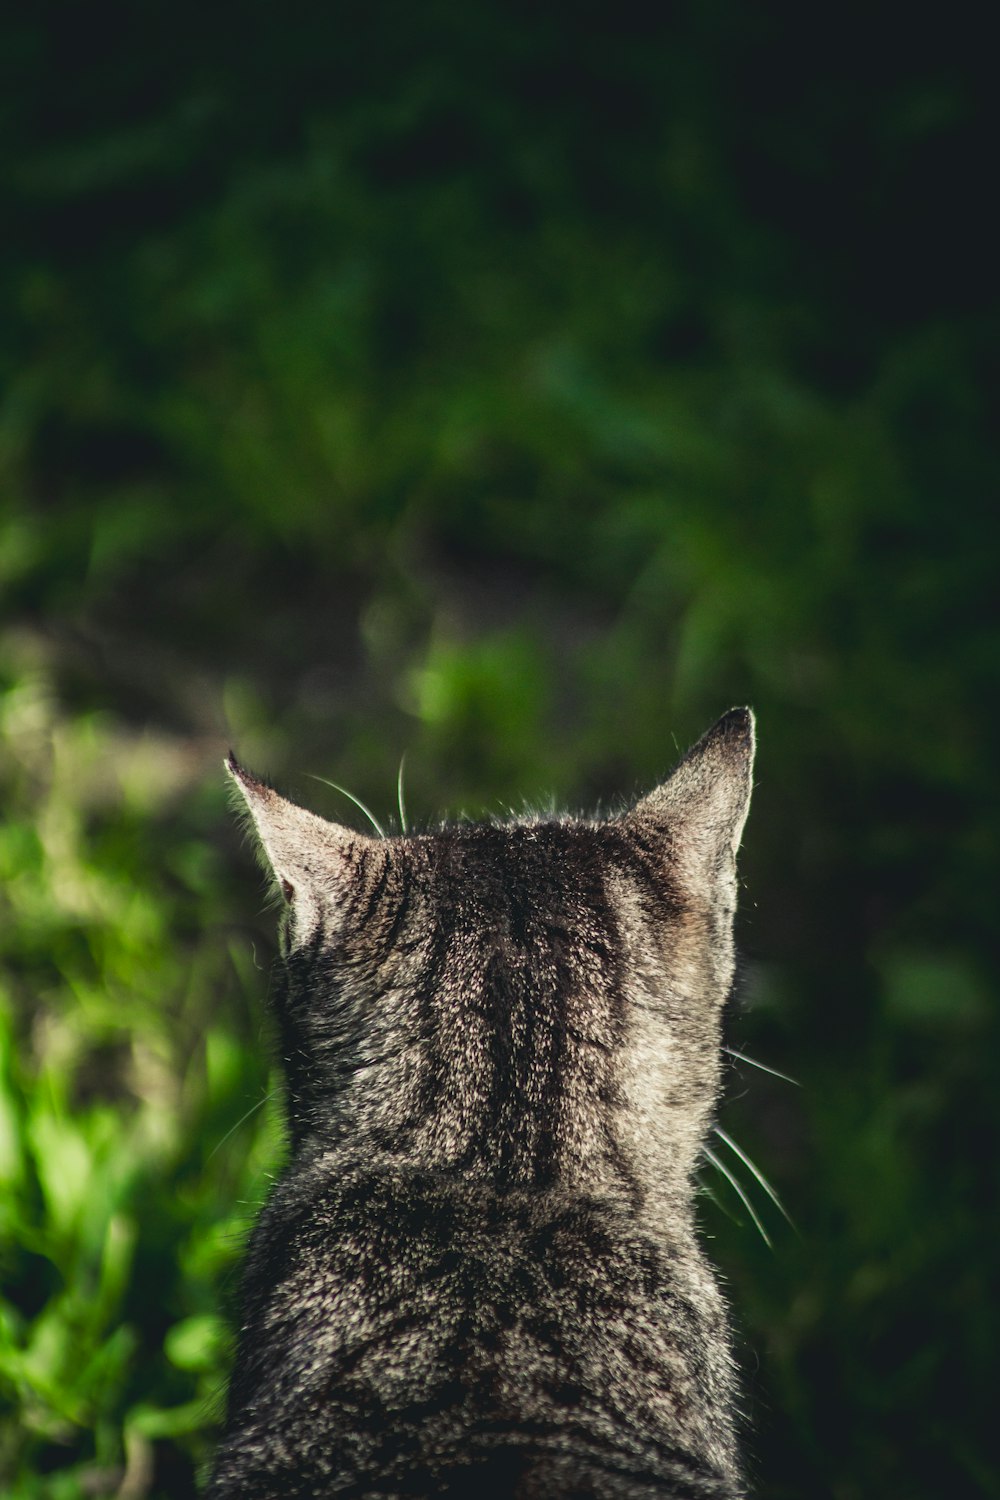 a close up of a cat's face with a bush in the background